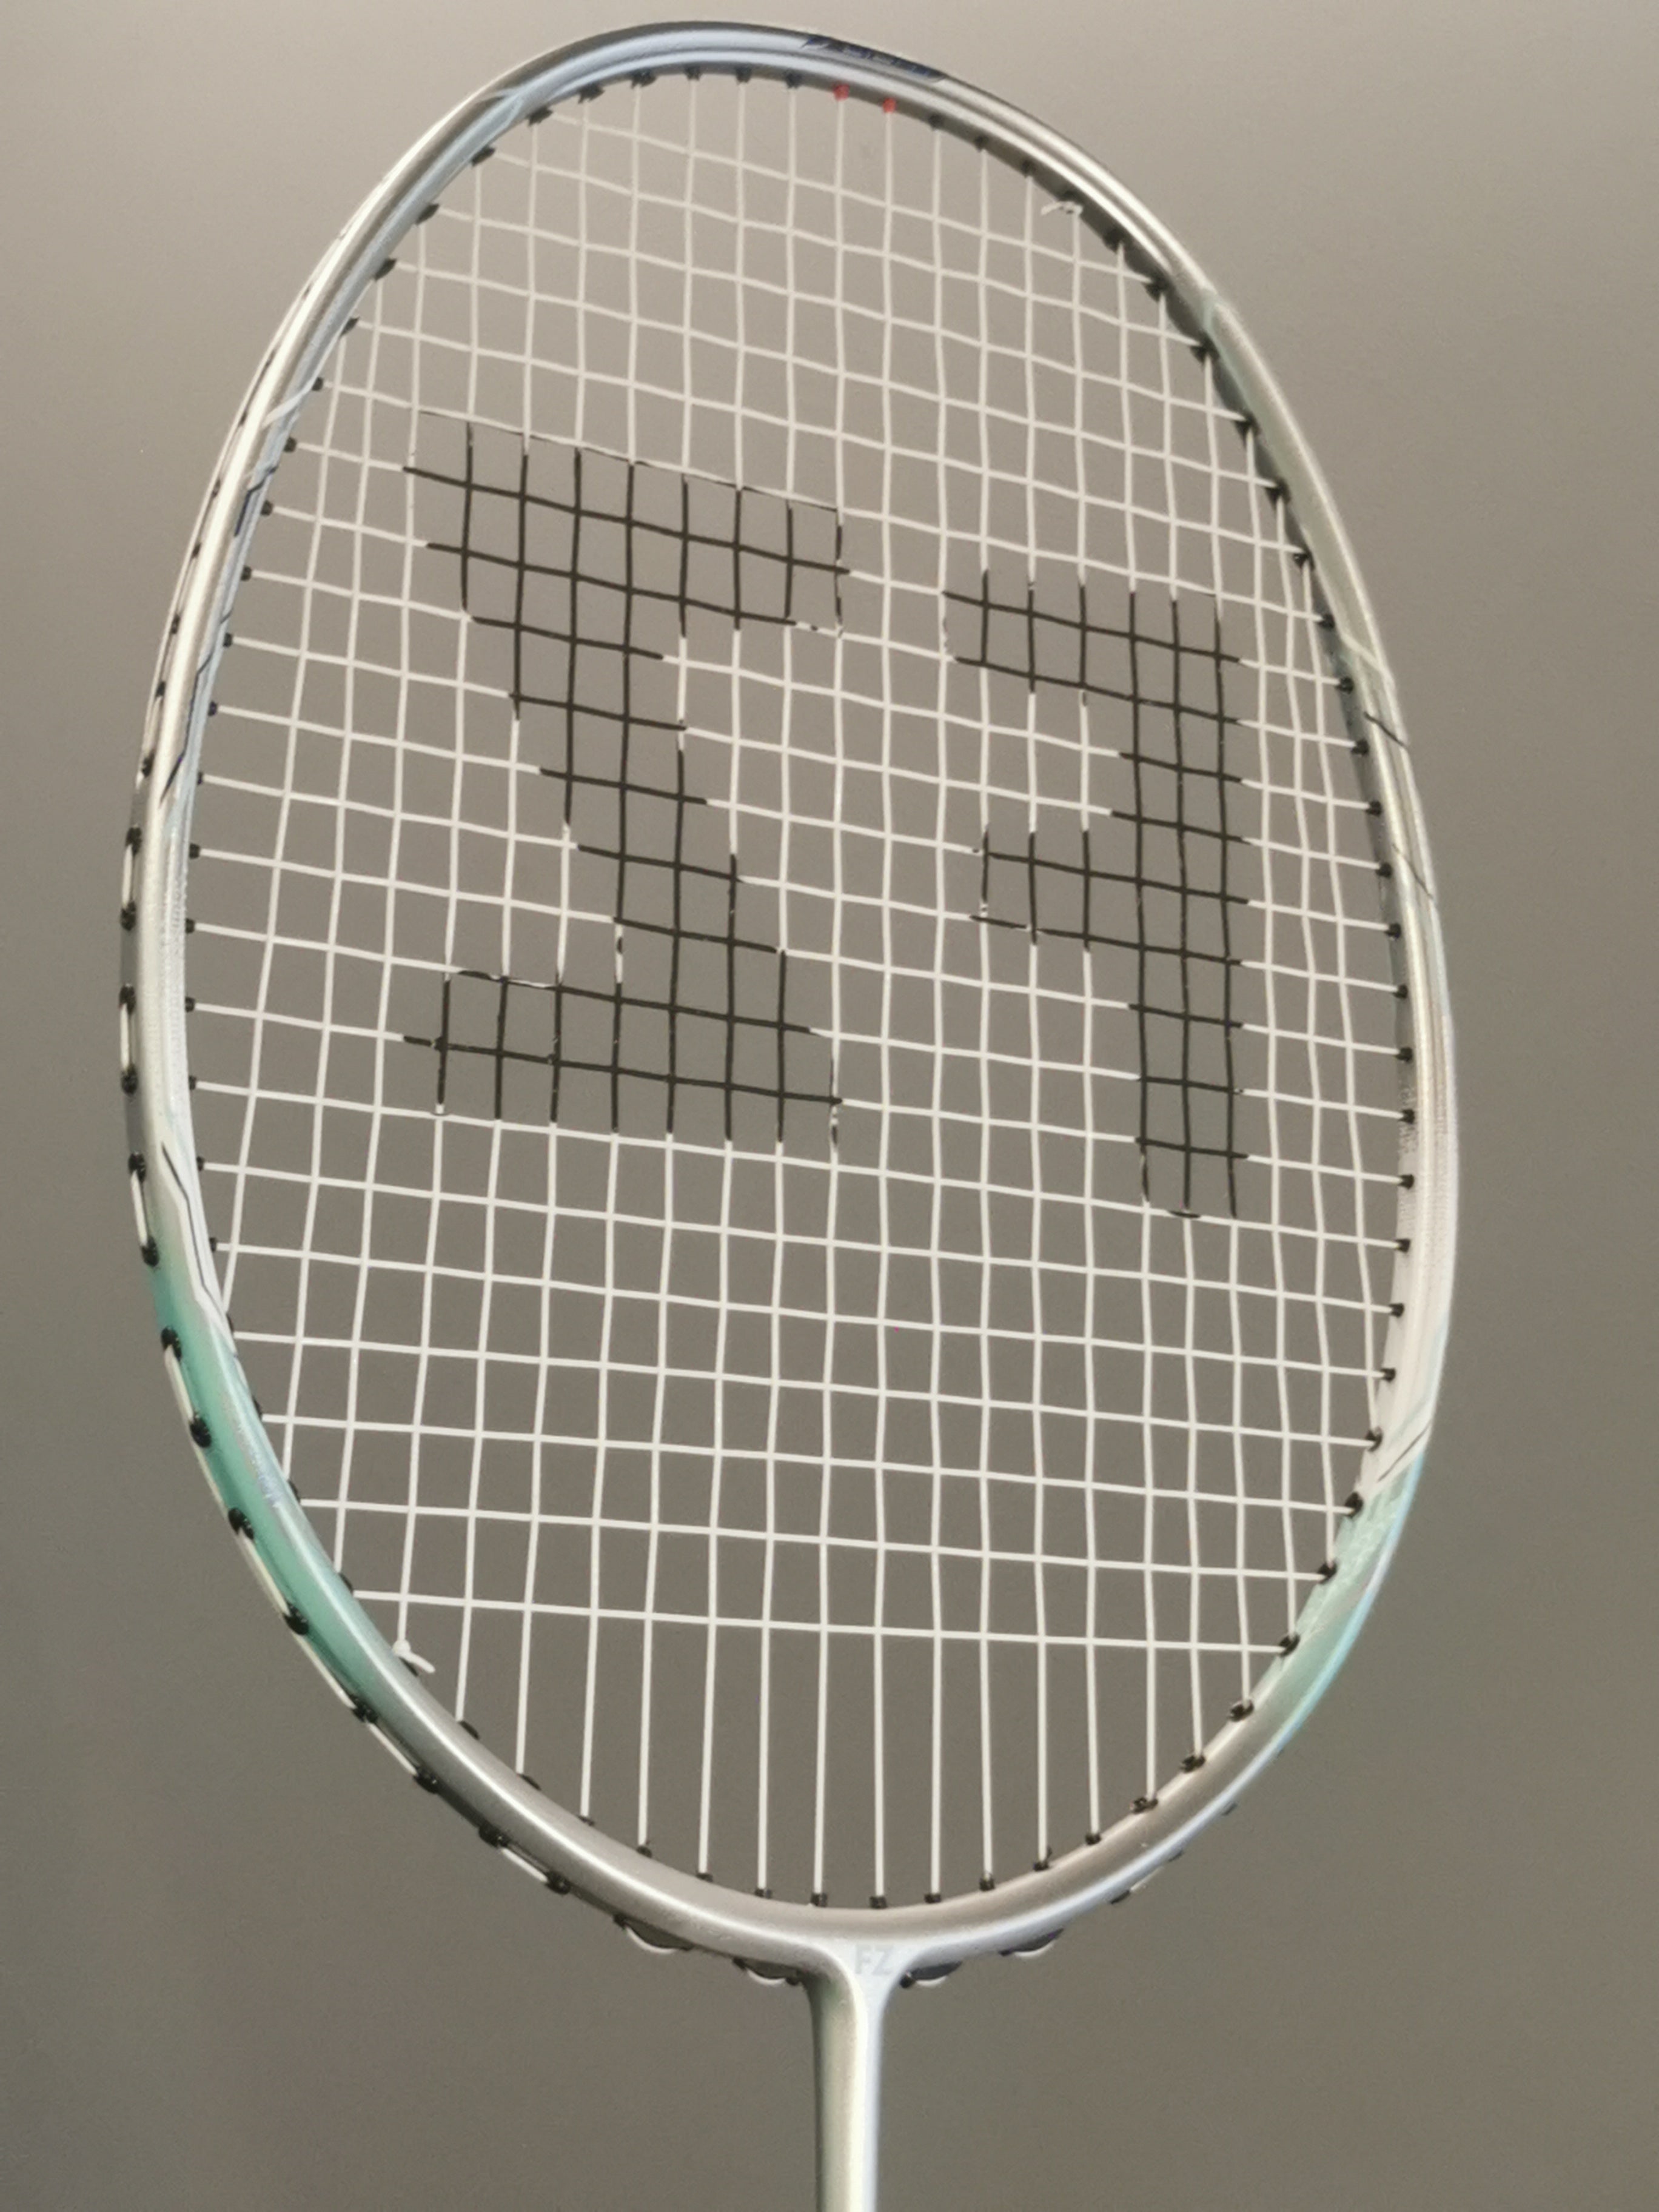 Stole på astronaut Samle FZ Forza racket pure light 6 badminton racket | badminton racket review